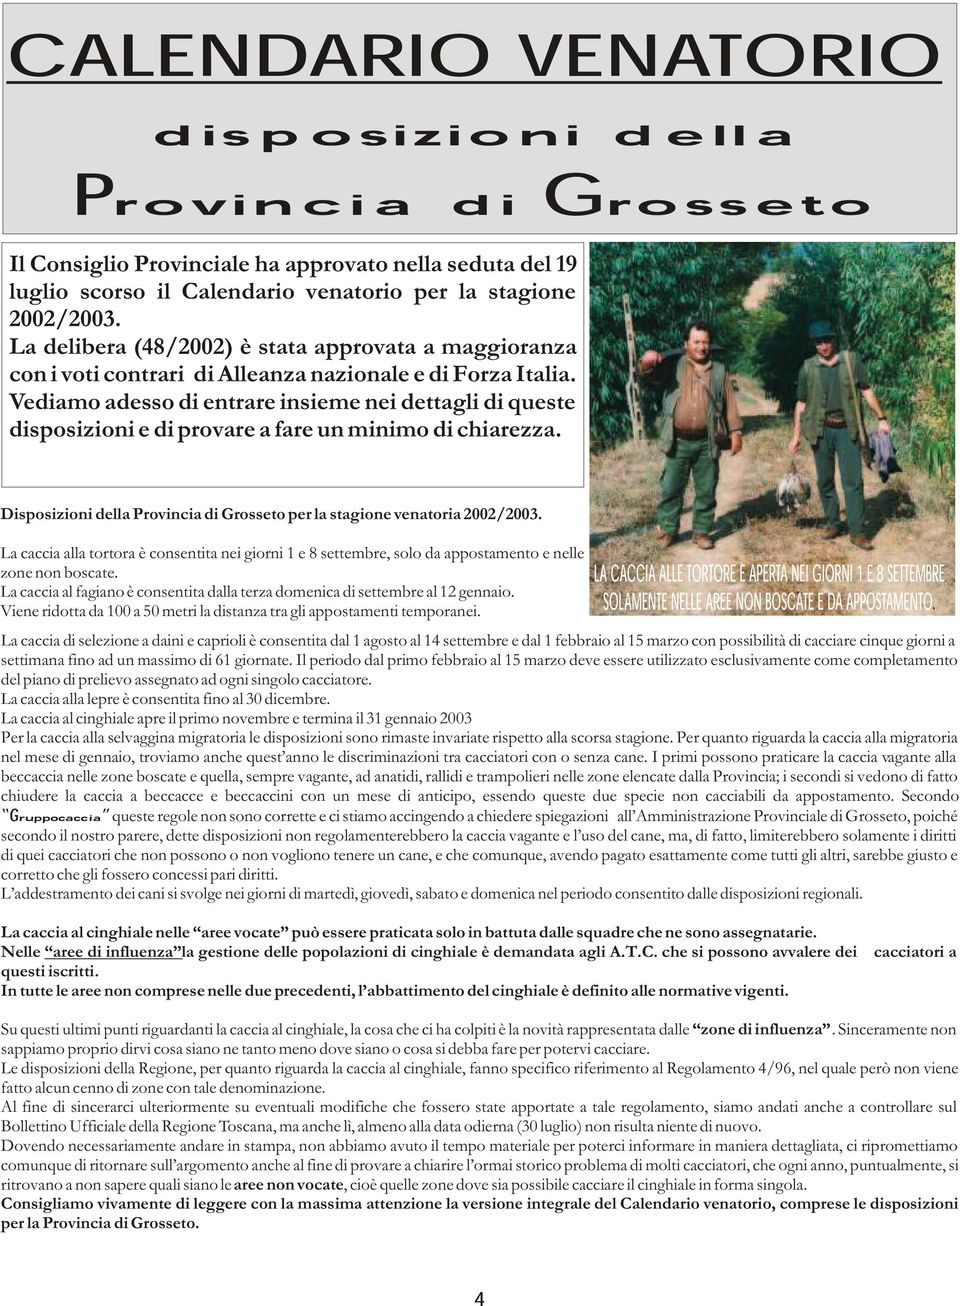 Vediamo adesso di entrare insieme nei dettagli di queste disposizioni e di provare a fare un minimo di chiarezza. Disposizioni della Provincia di Grosseto per la stagione venatoria 2002/2003.